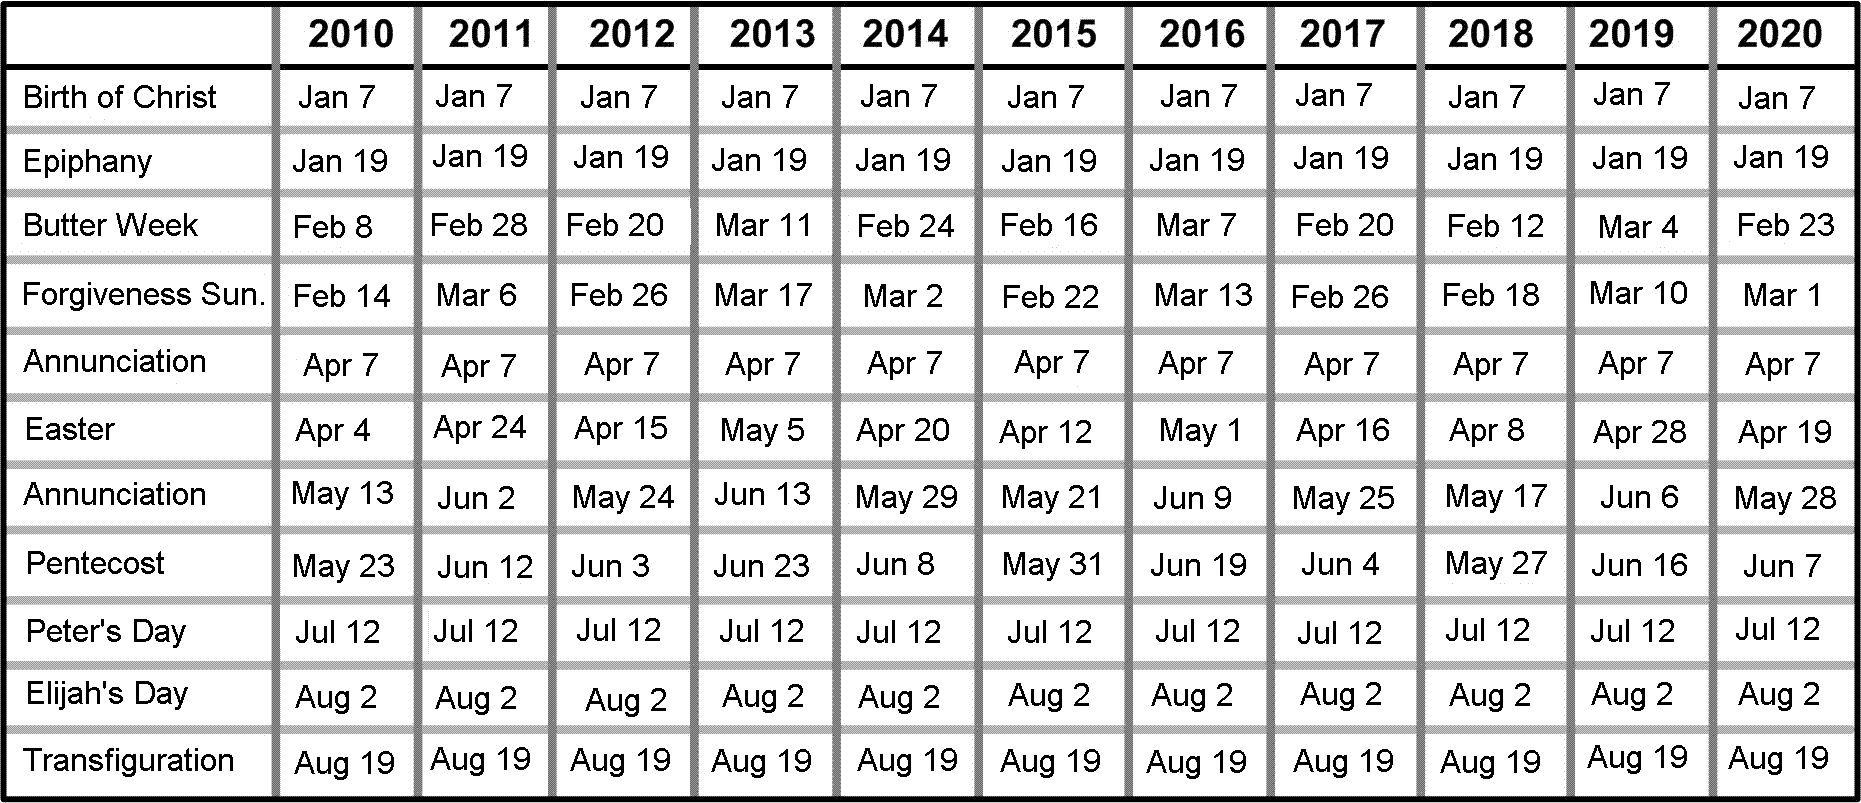 Пасха в 2002 году какого числа. Числа Пасхи по годам. Даты Пасхи таблица. Календарь Пасхи на несколько лет. Даты Пасхи по годам с 2000 года.